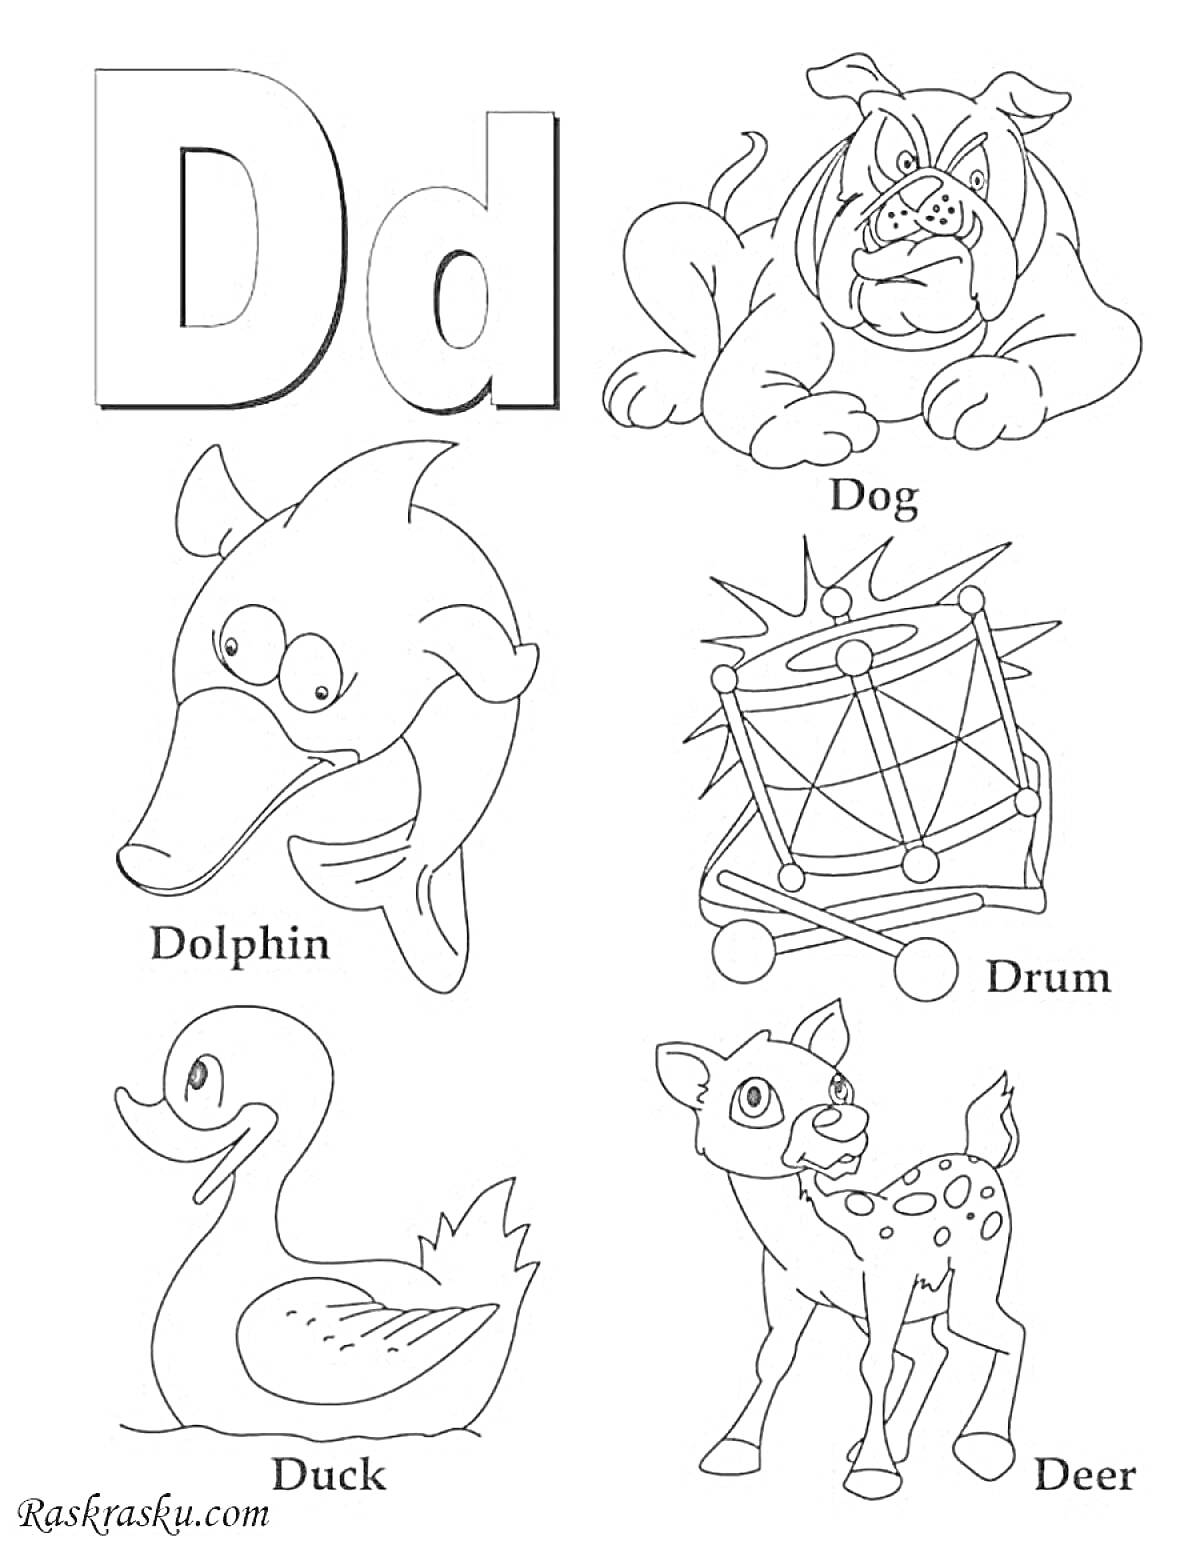 Раскраска Английский алфавит. Буква D. Собака, дельфин, барабан, утка, олень.